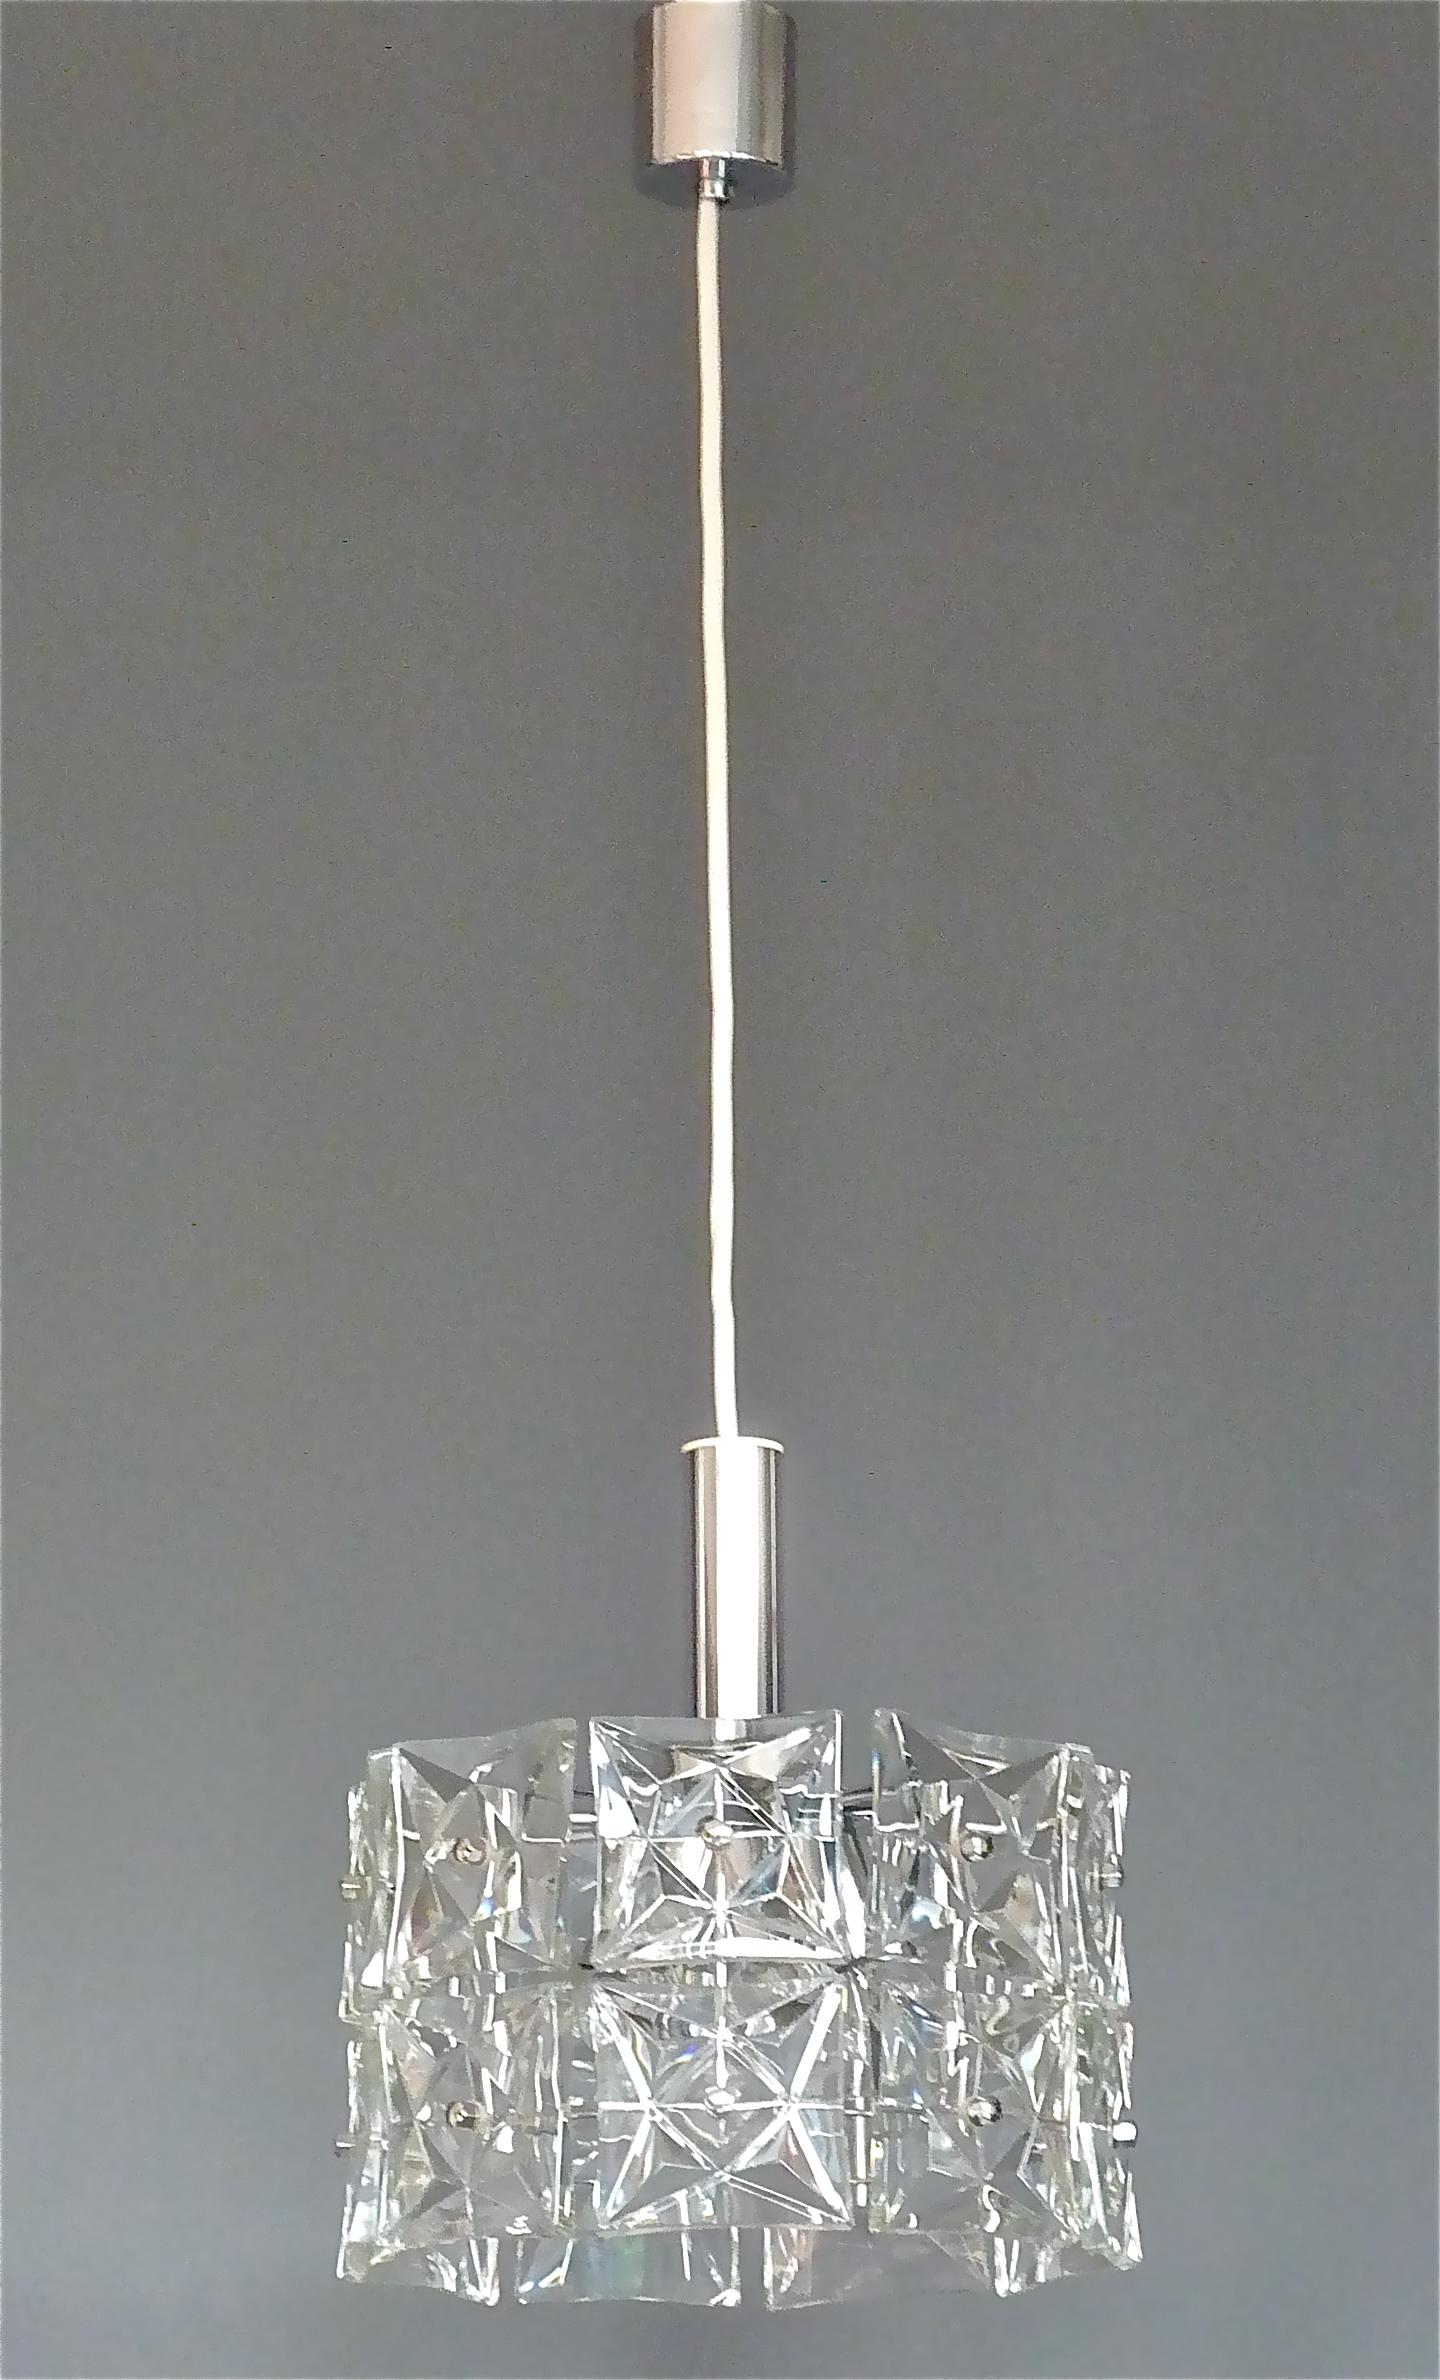 Lustre moderniste à deux étages de Kinkeldey, Allemagne, vers 1960-1970. Il est composé de 18 panneaux carrés étincelants en verre de cristal à facettes, chacun mesurant 10 x 10 cm de haut et de large, montés sur un support métallique en laiton